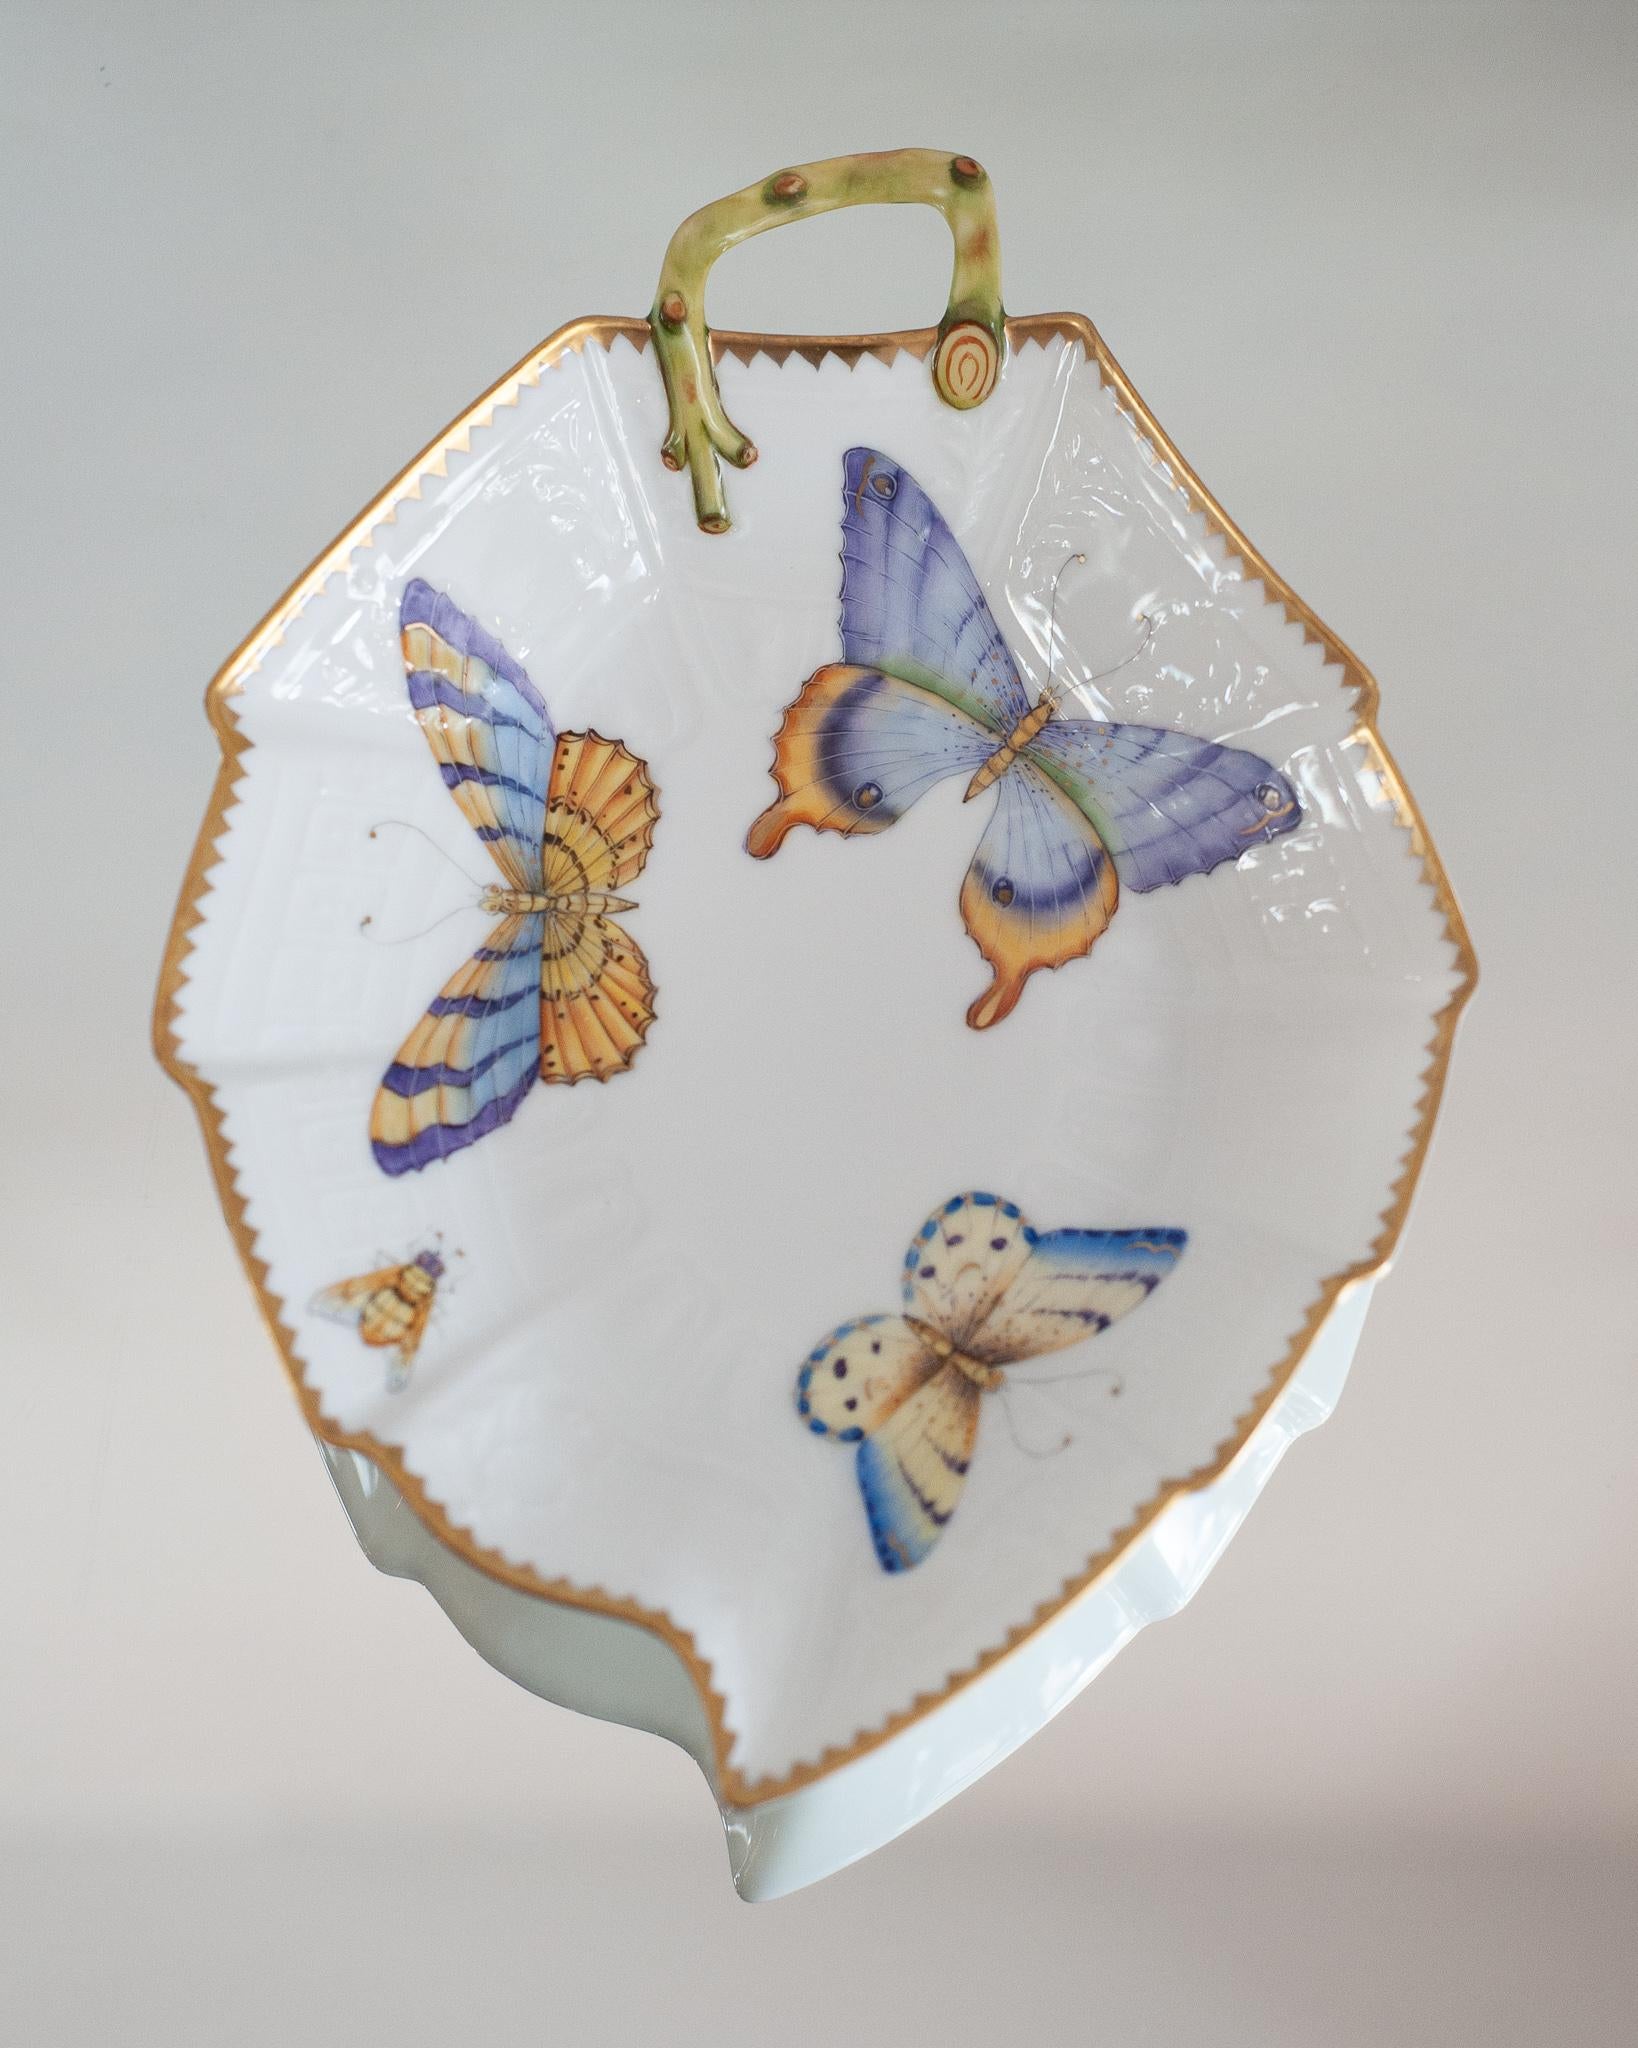 Un magnifique plateau de service en forme de feuille peint à la main avec poignée, par Anna Weatherley Designs. Anna Weatherley conçoit et produit de la porcelaine botanique fine peinte à la main en Hongrie depuis 30 ans.